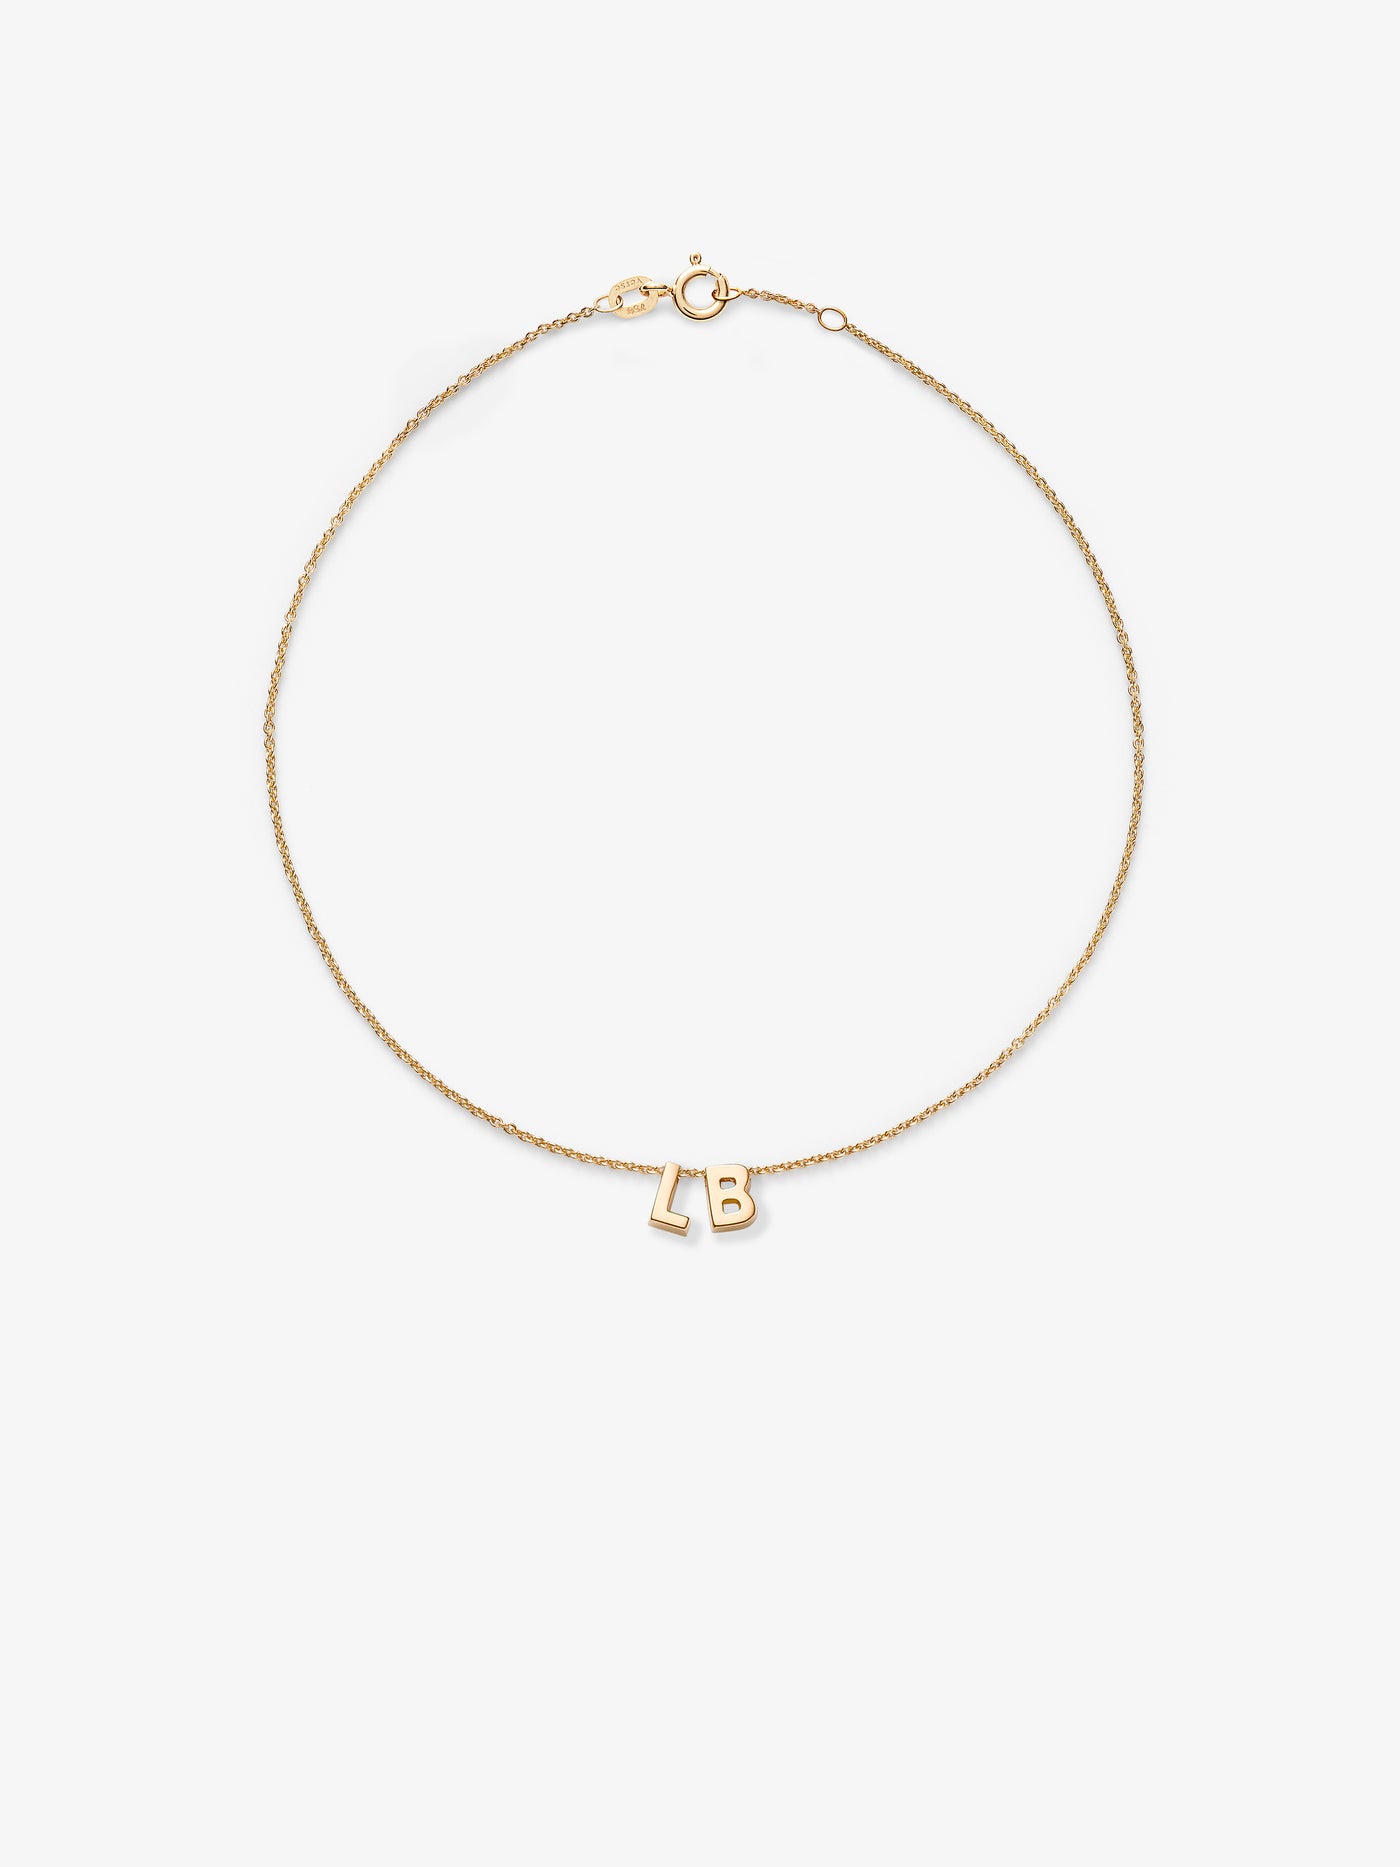 Verse-Fine-Jewellery-Love-Letters-18-Karat-Solid-Gold-LB-Bracelet